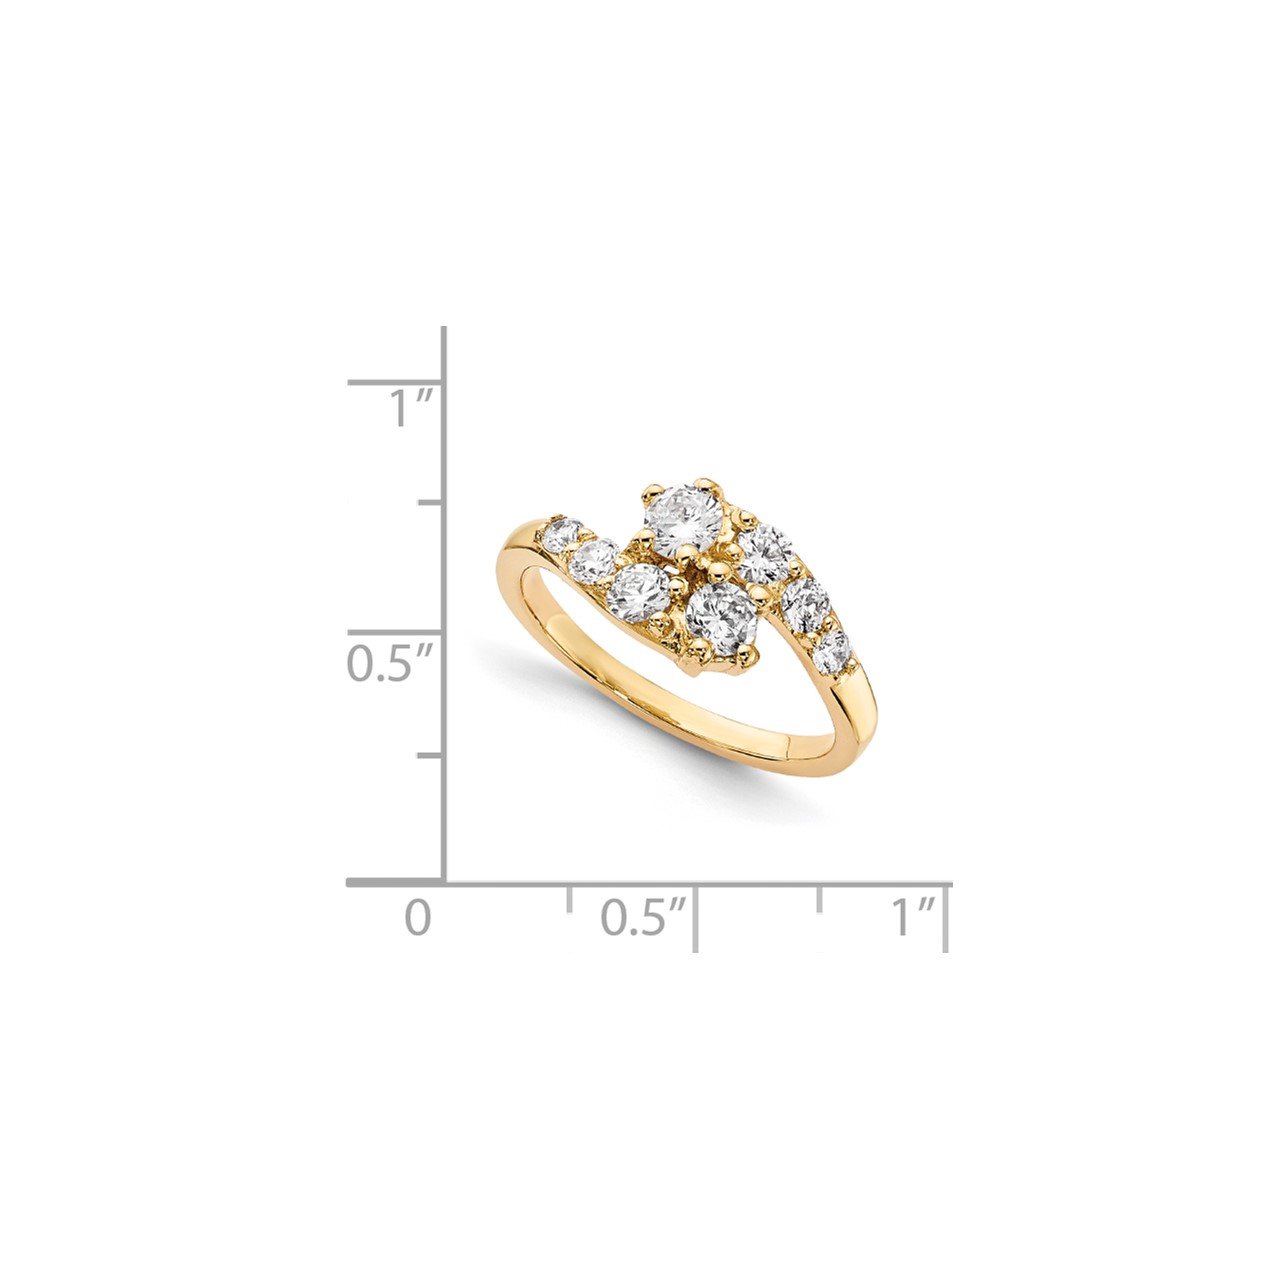 14KY AA Diamond 2-stone Ring Semi-Mount - 2.8 mm center stones-6